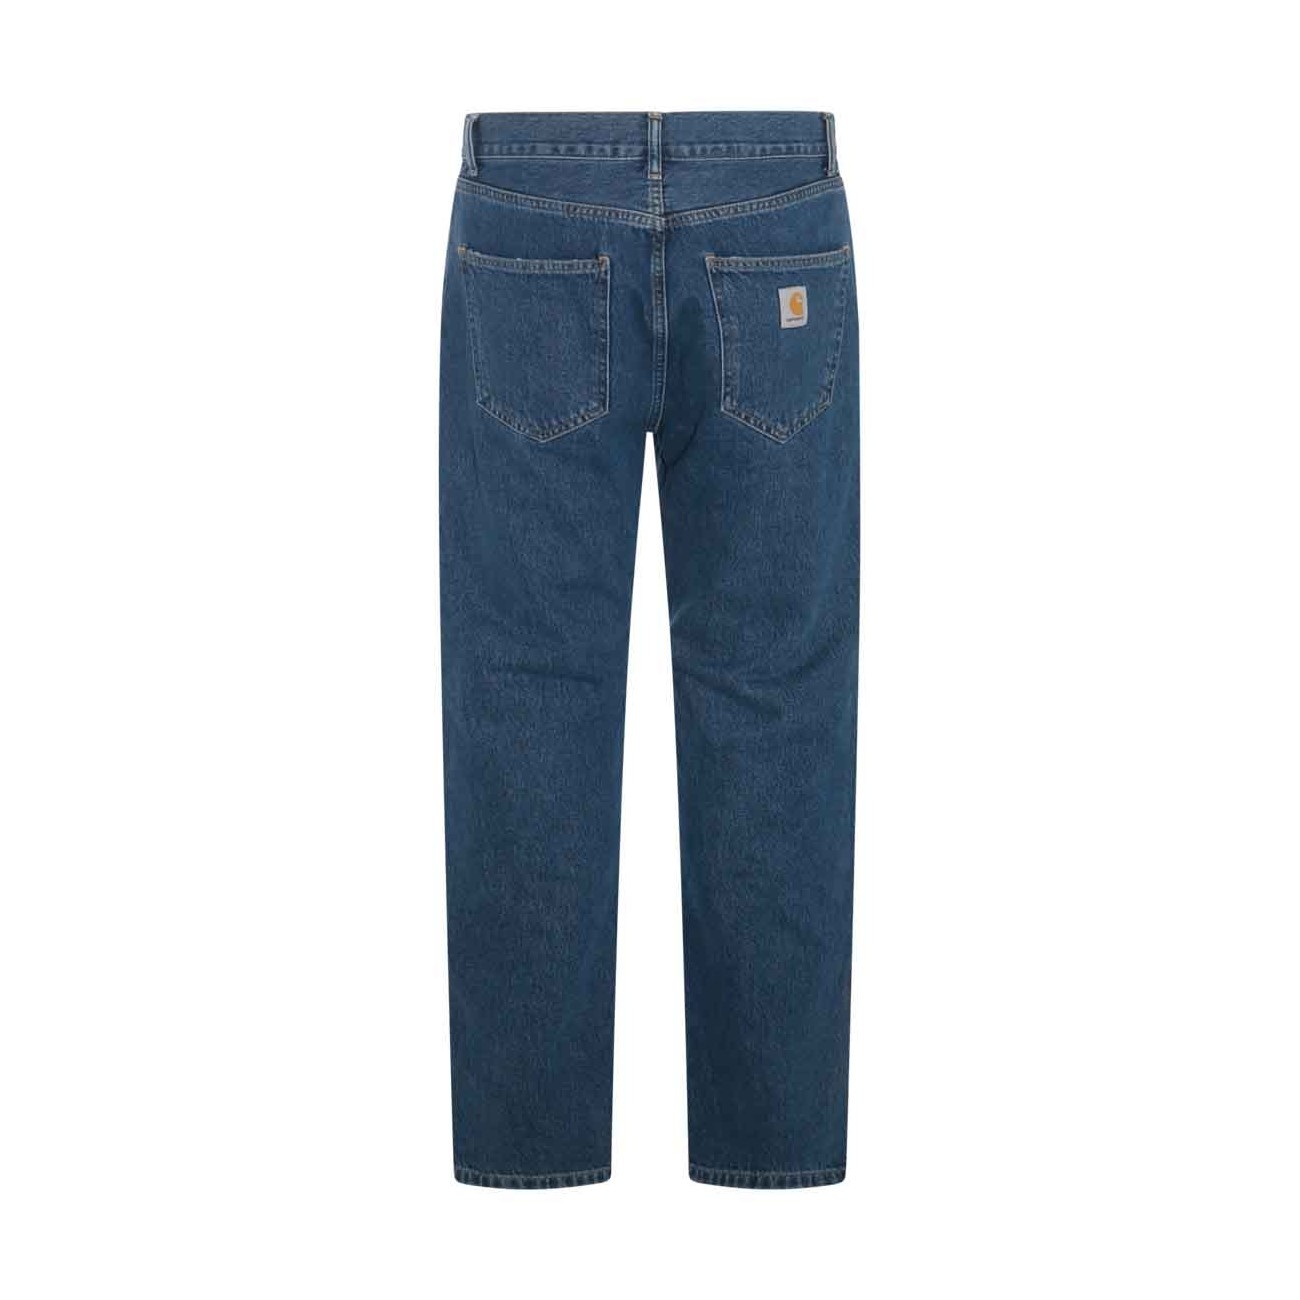 blue cotton denim jeans - 2